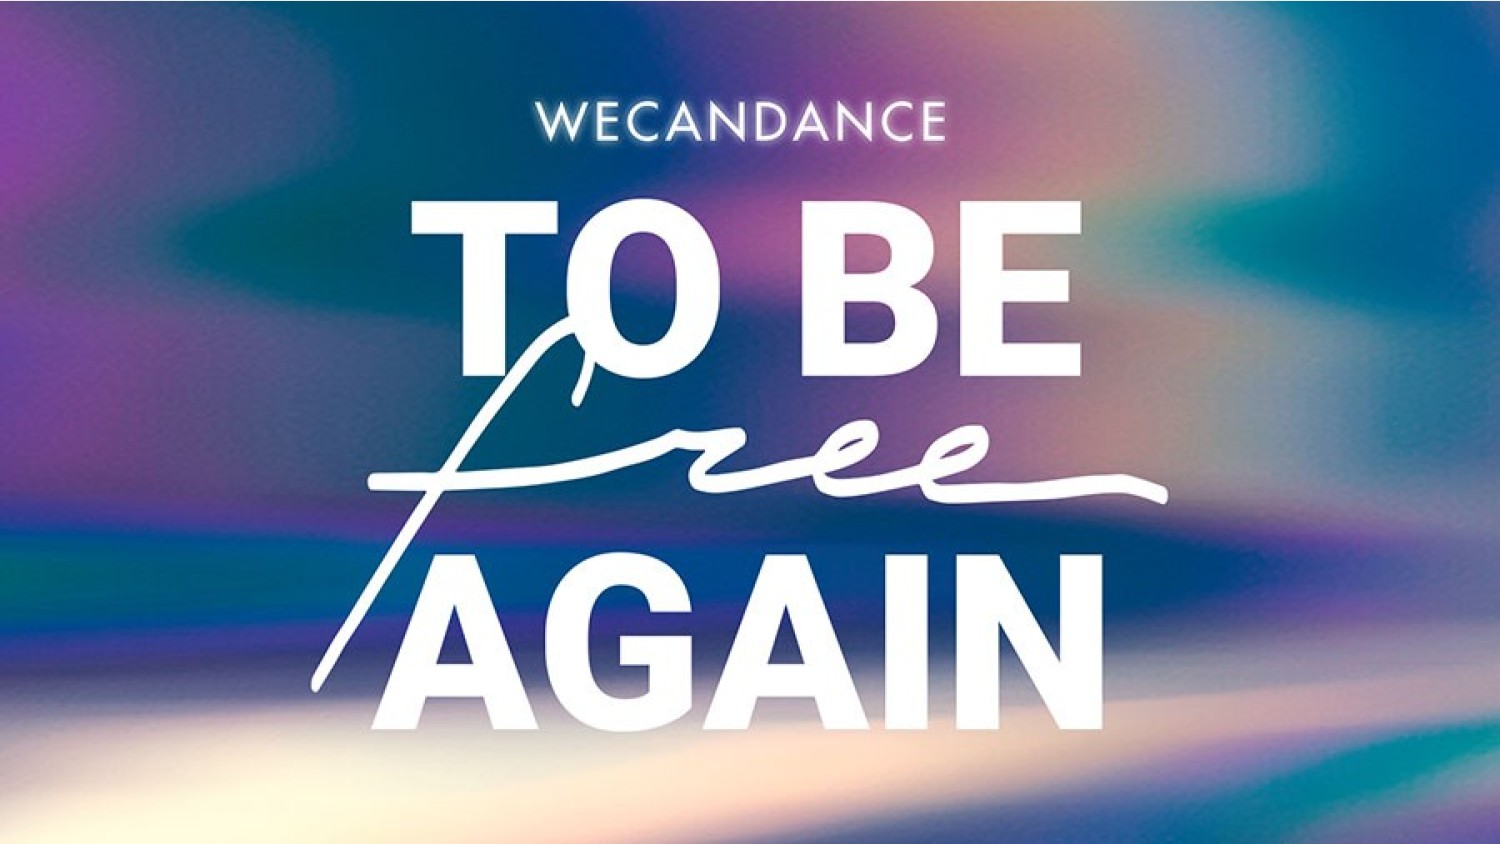 Party nieuws: WECANDANCE organiseert deze zomer 8 coronaproof edities in Zeebrugge